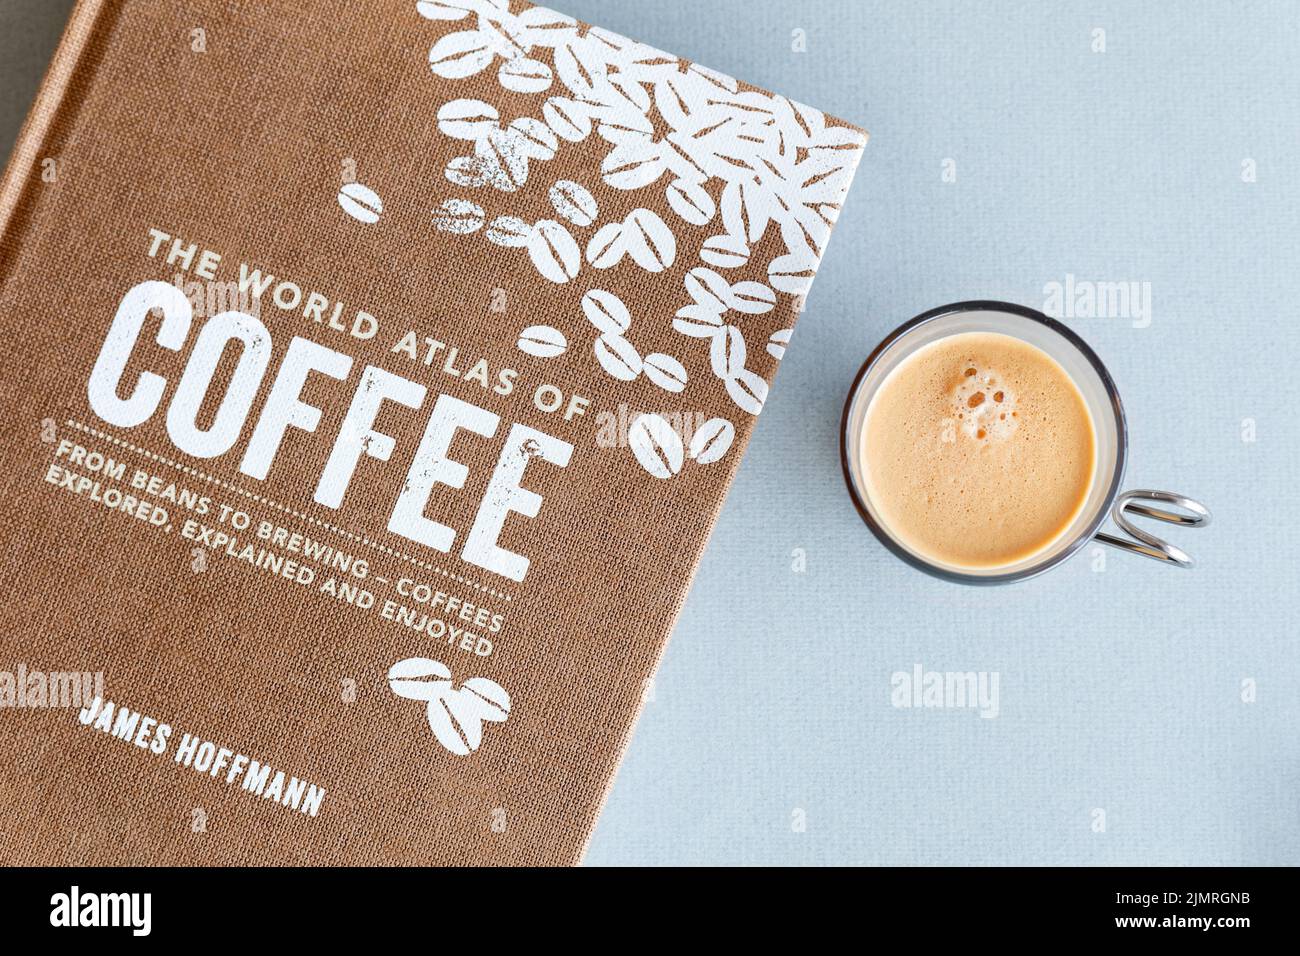 Un livre consacré à la fabrication du café et du café appelé l'Atlas mondial du café écrit par James Hoffmann. Un café expresso se trouve à côté du livre Banque D'Images